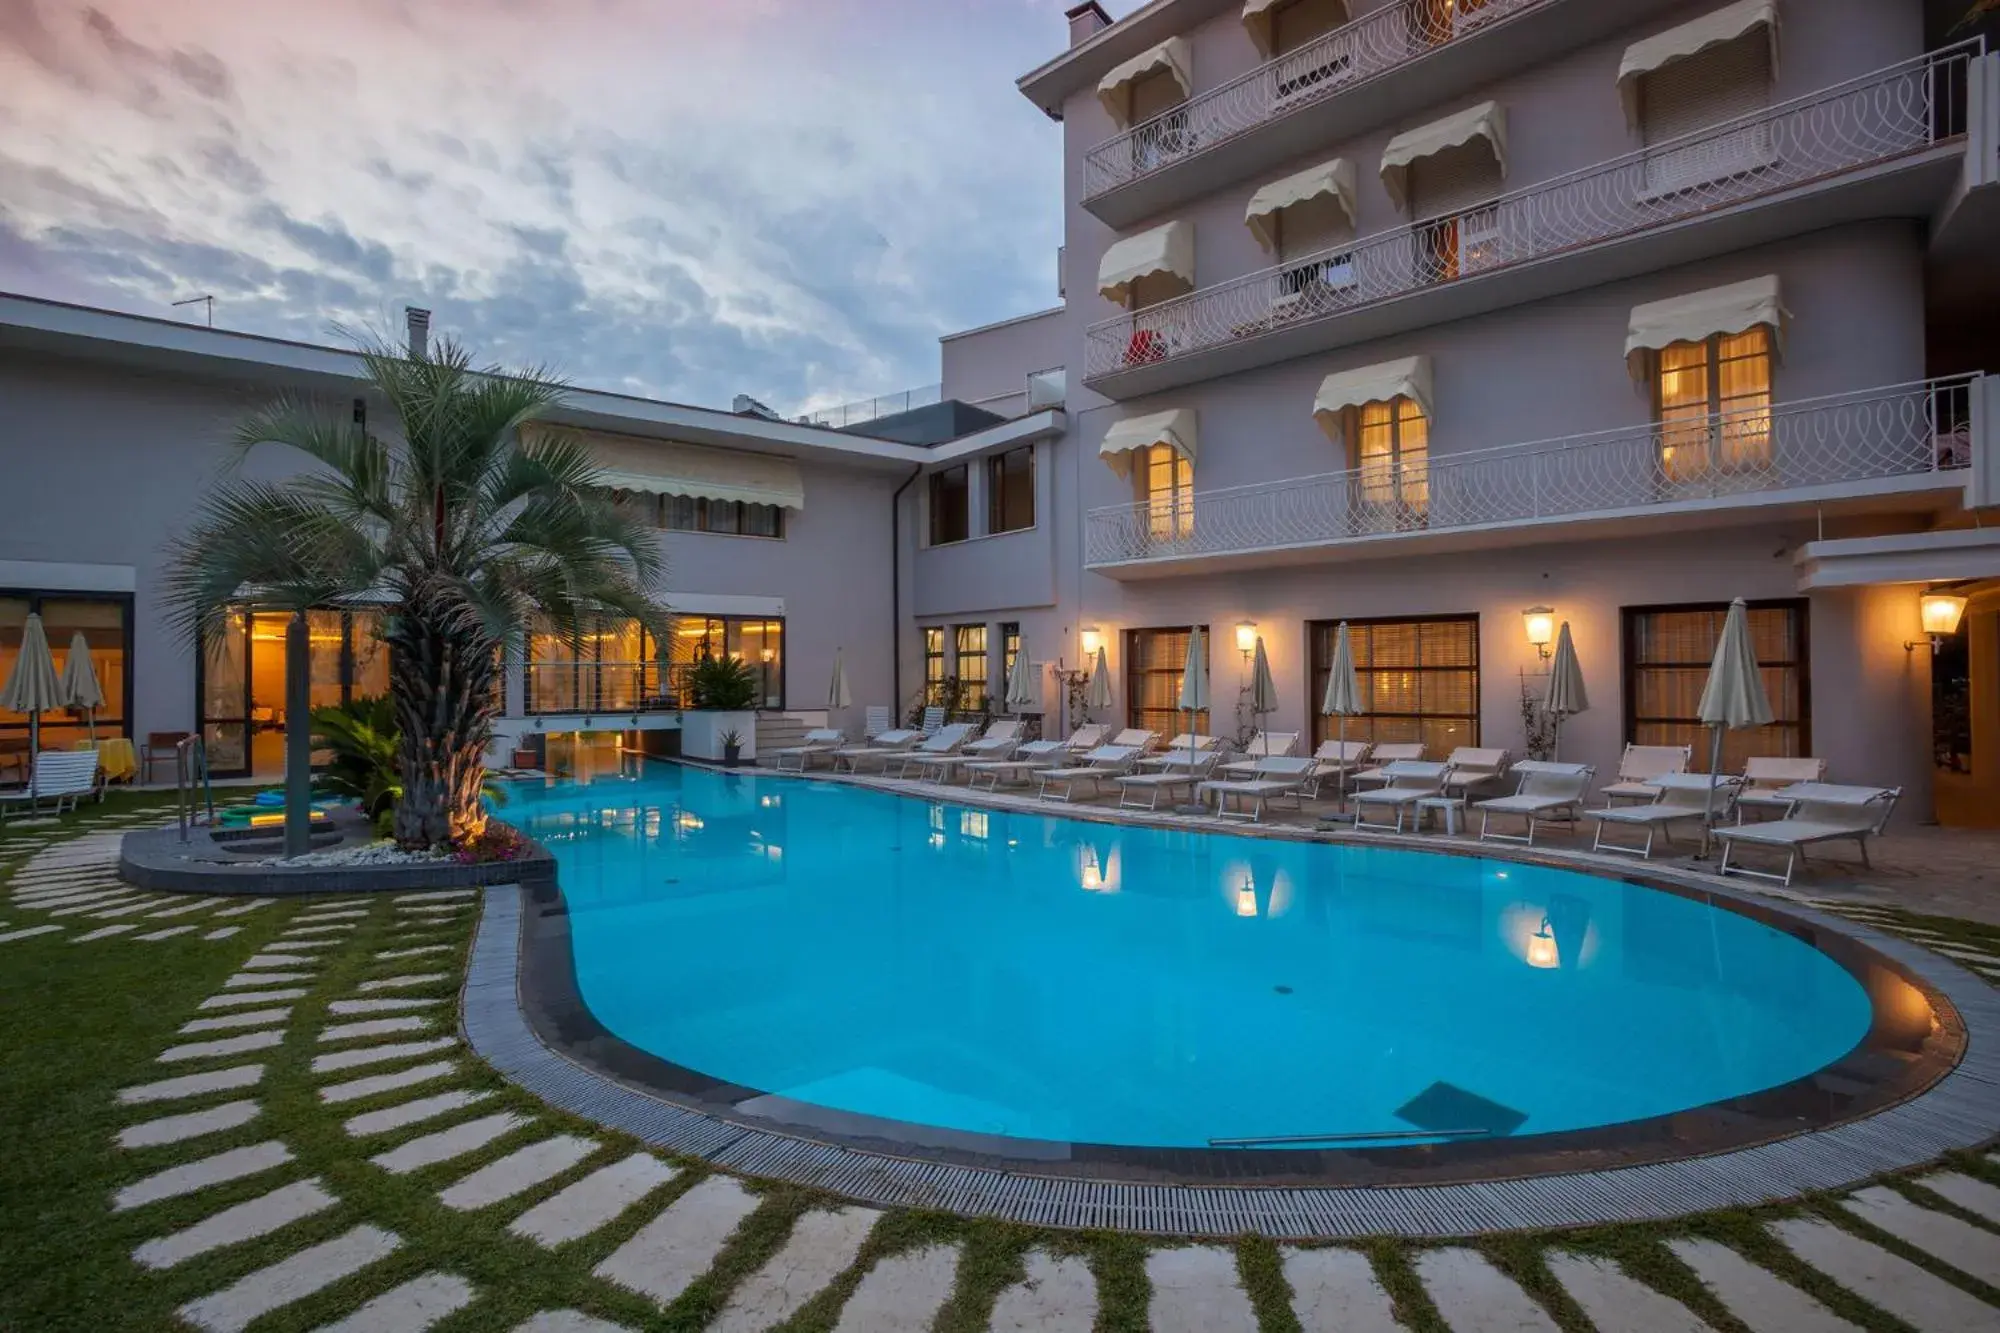 Swimming Pool in Hotel Terme Salus